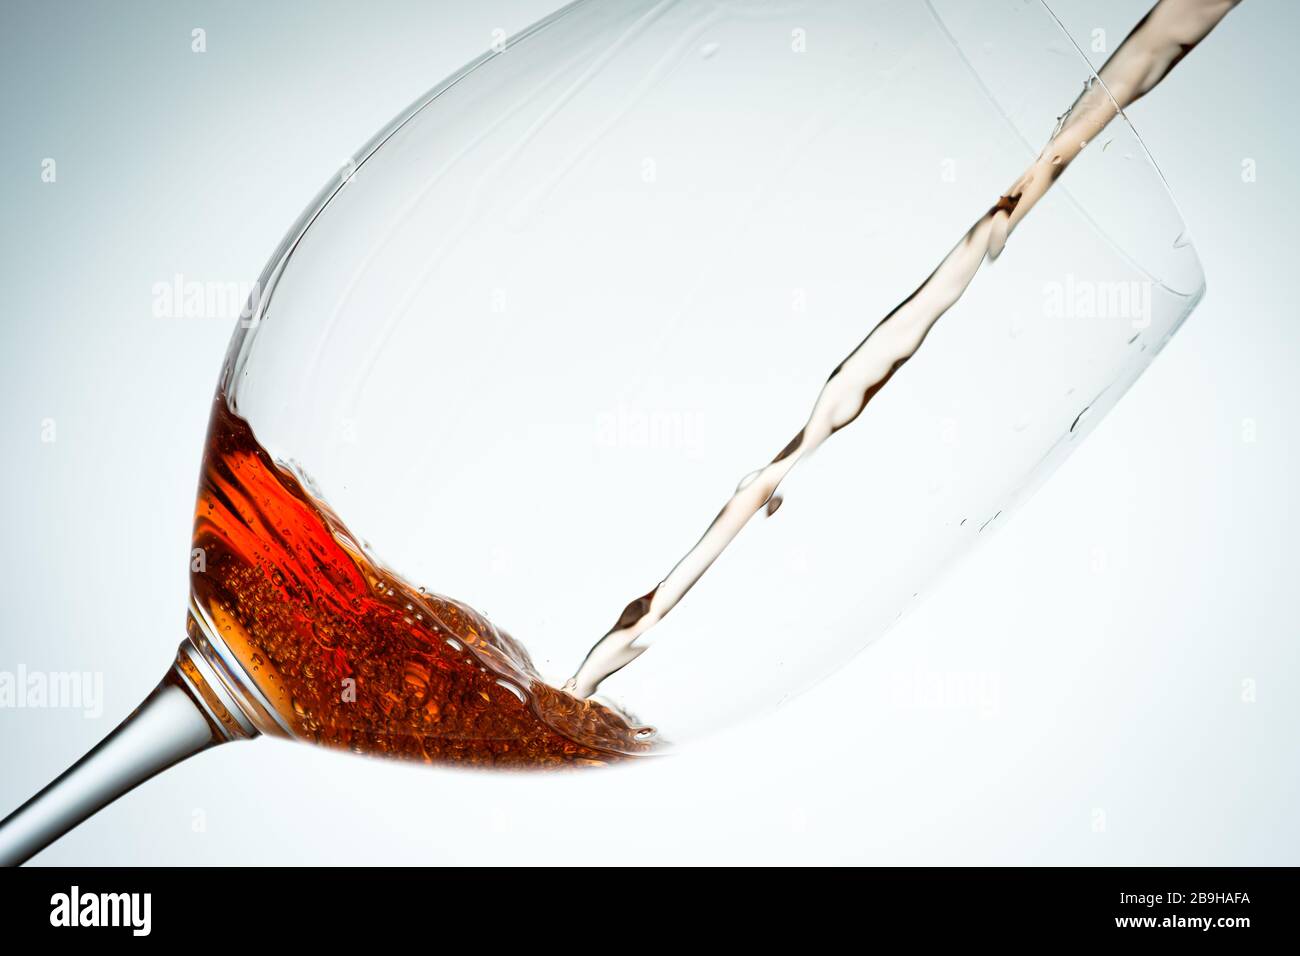 Rotweinglas mit strömender Flüssigkeit in Hintergrundbeleuchtung Stockfoto